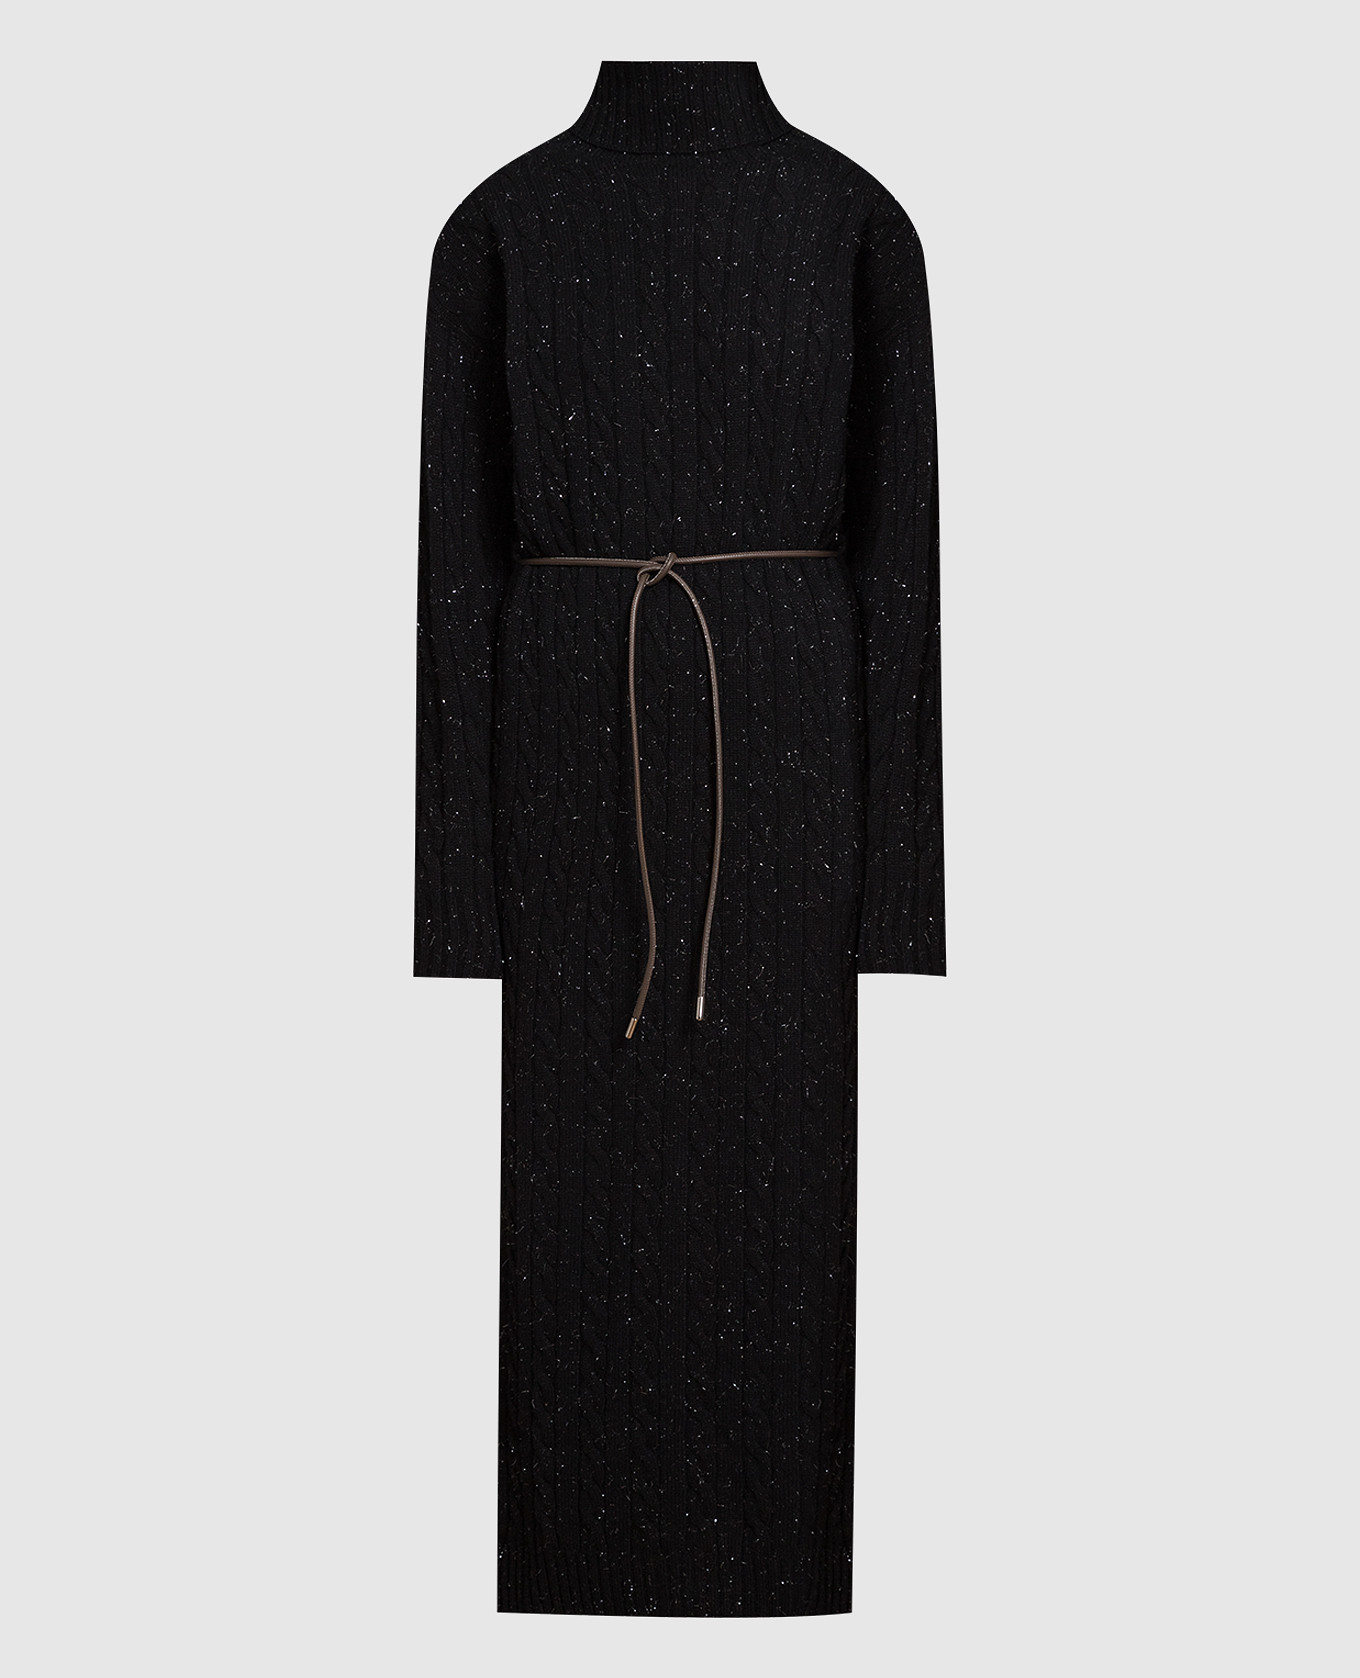 Черное платье из шерсти, шелка и кашемира с люрексом.